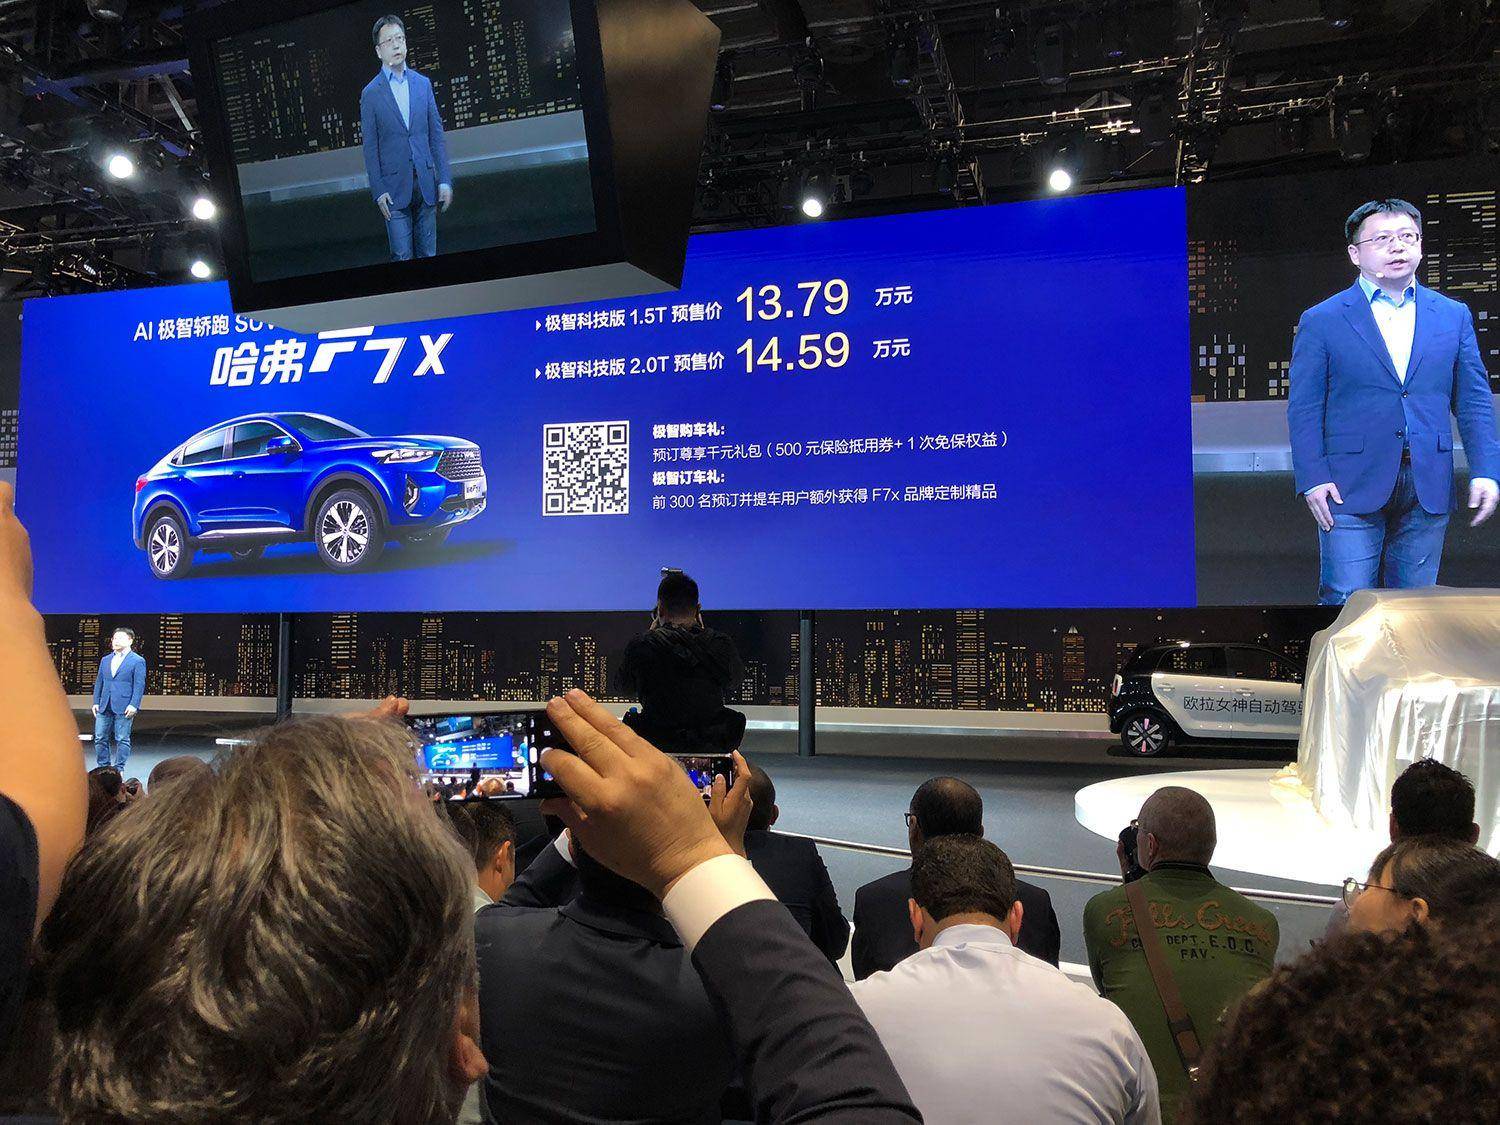 2019上海车展:哈弗F7x预售价13.79万元起 - 热